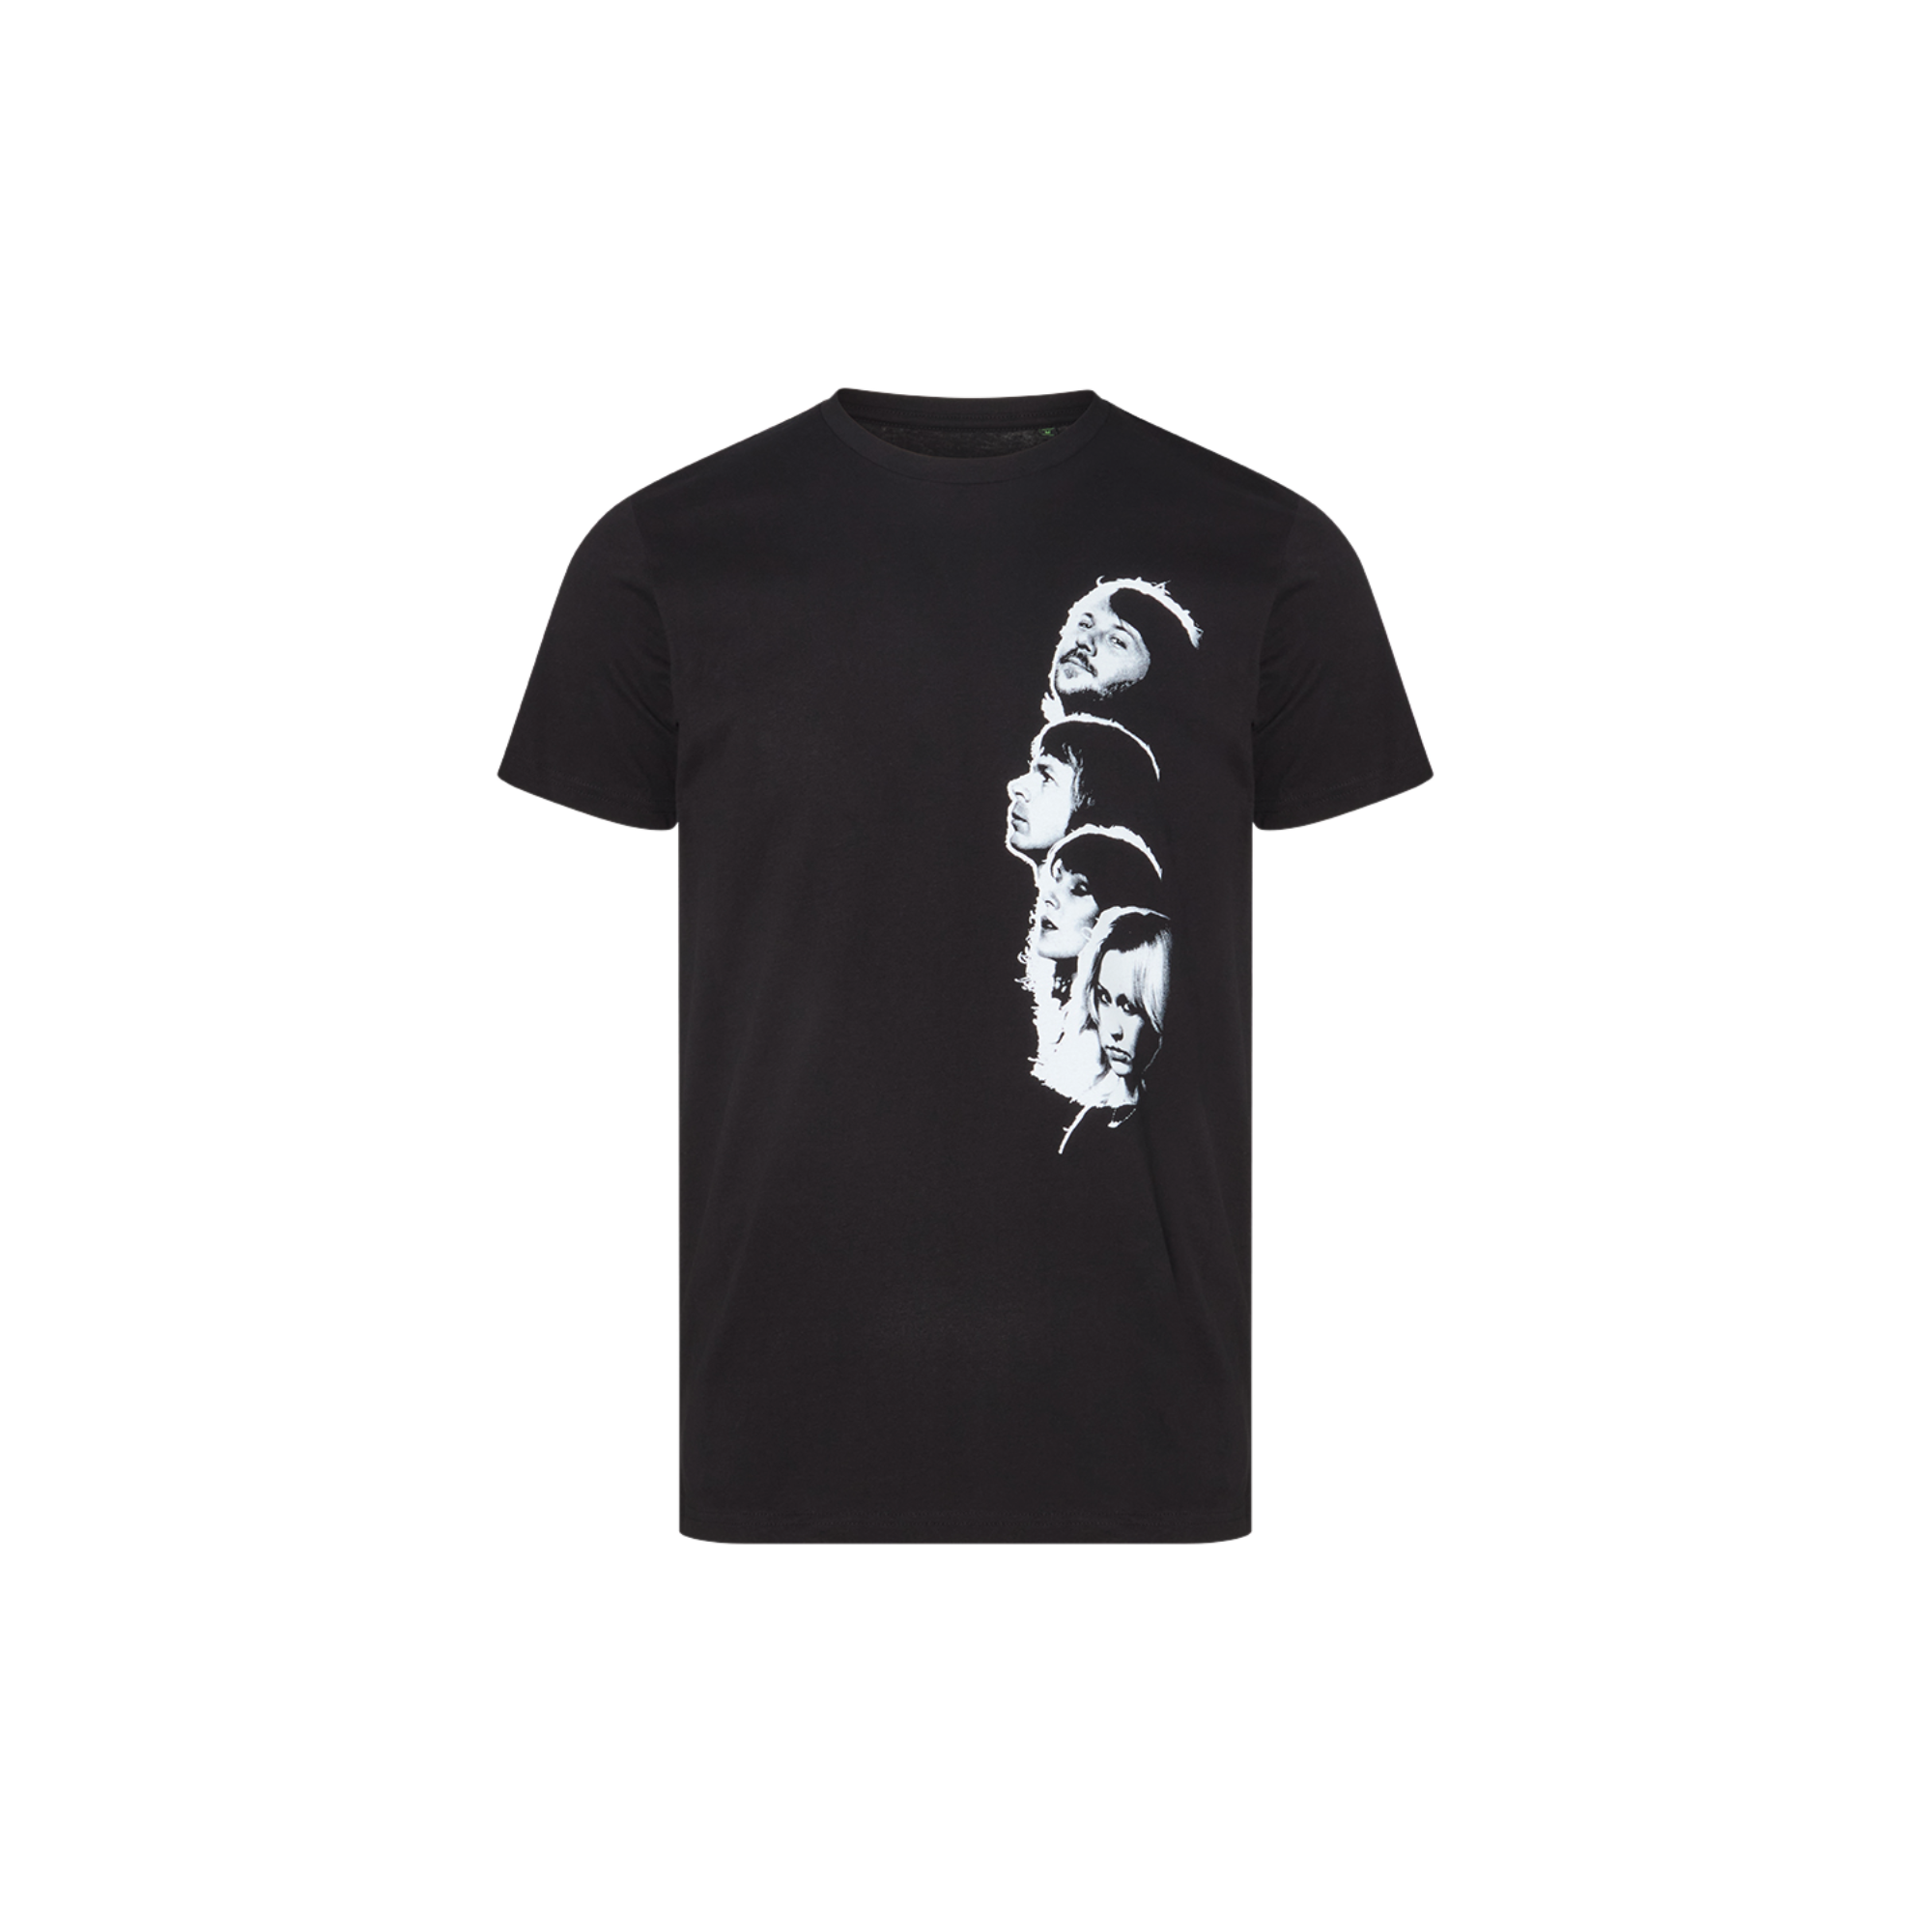 ABBA Silhouette t-shirt